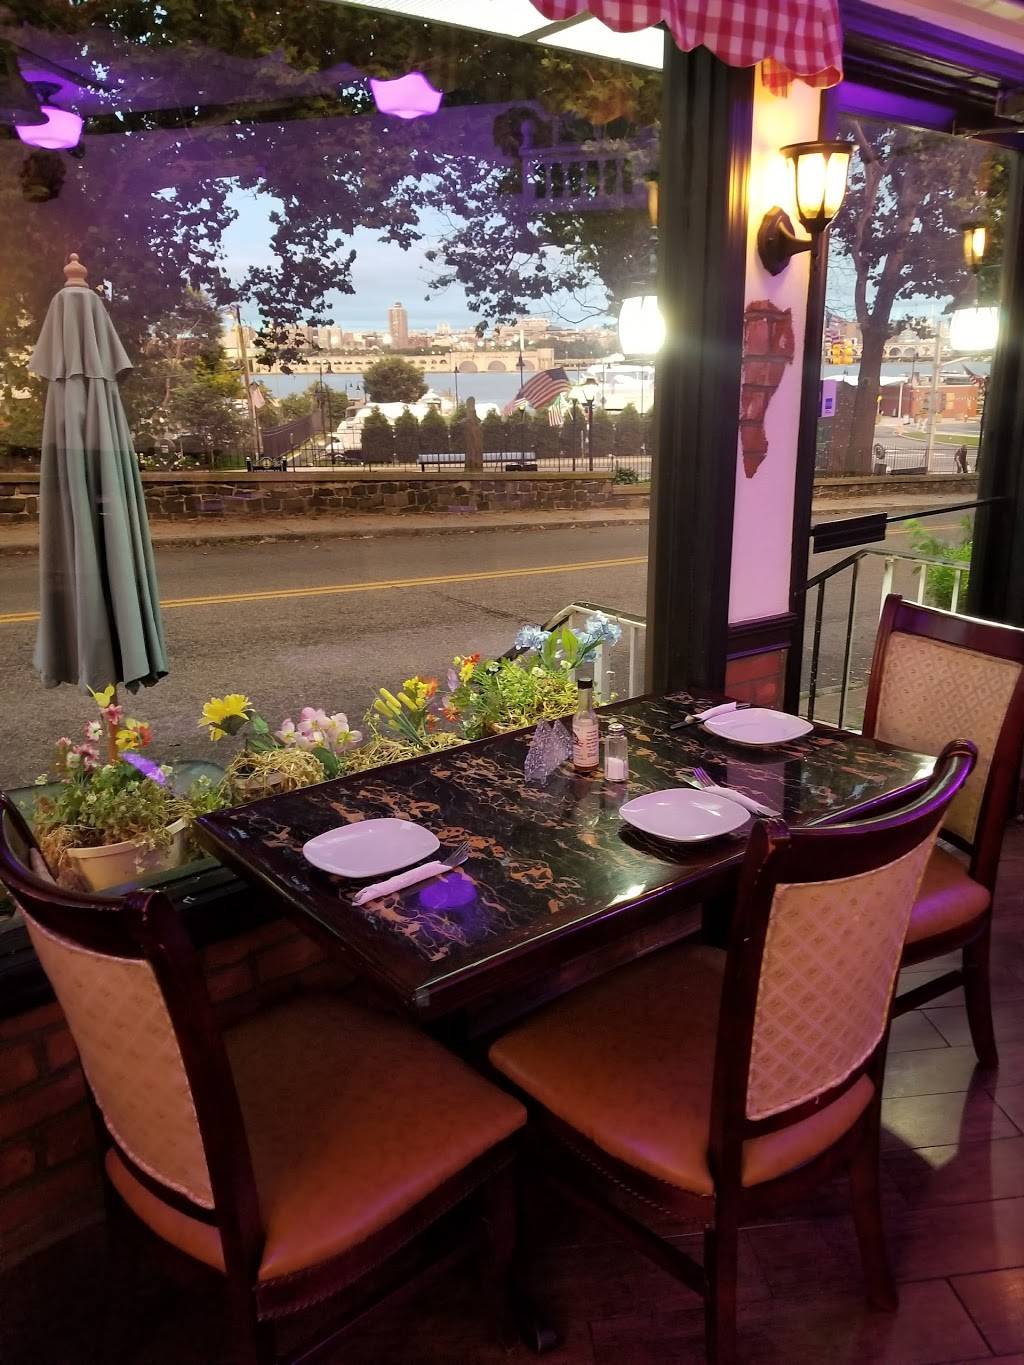 Tabouli Lebanese Restaurant | restaurant | 19 NJ-5, Edgewater, NJ 07020, USA | 2018409300 OR +1 201-840-9300